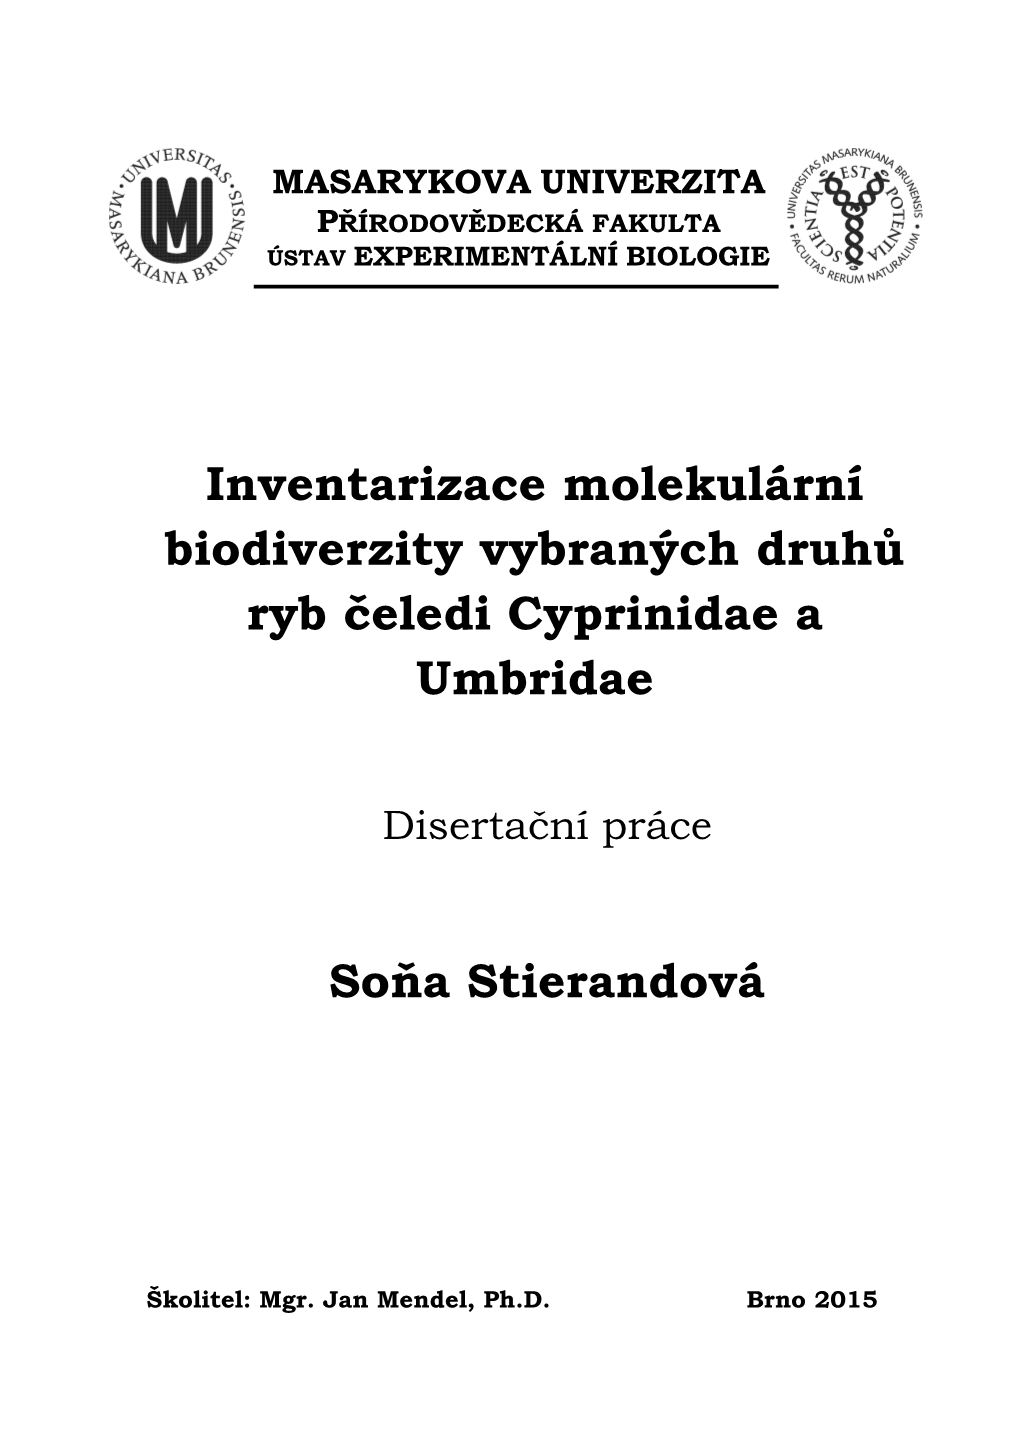 Inventarizace Molekulární Biodiverzity Vybraných Druhů Ryb Čeledi Cyprinidae a Umbridae